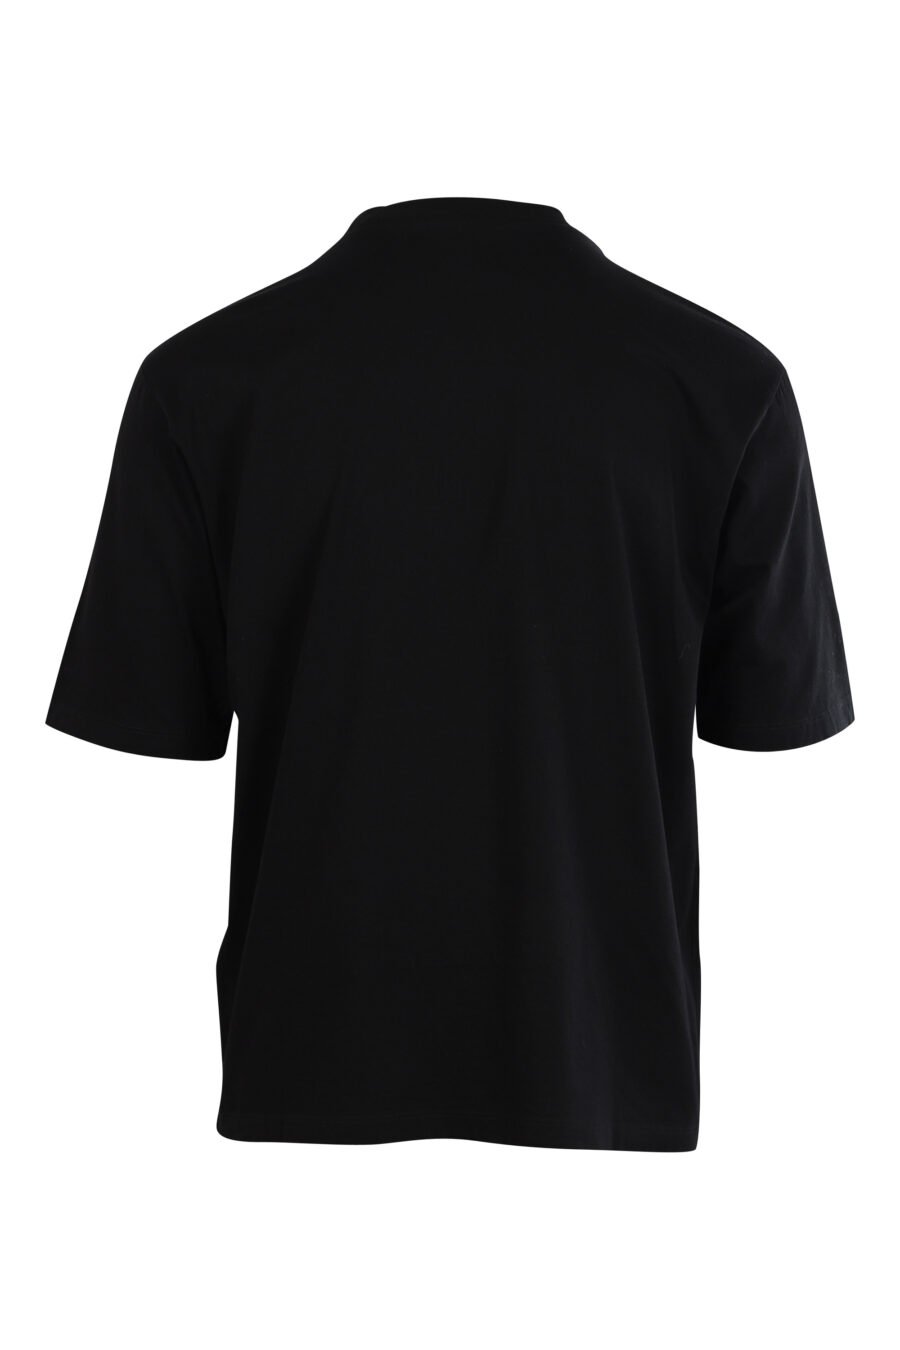 Camiseta negra "Oversized" con logo en contraste - 8054148006570 2